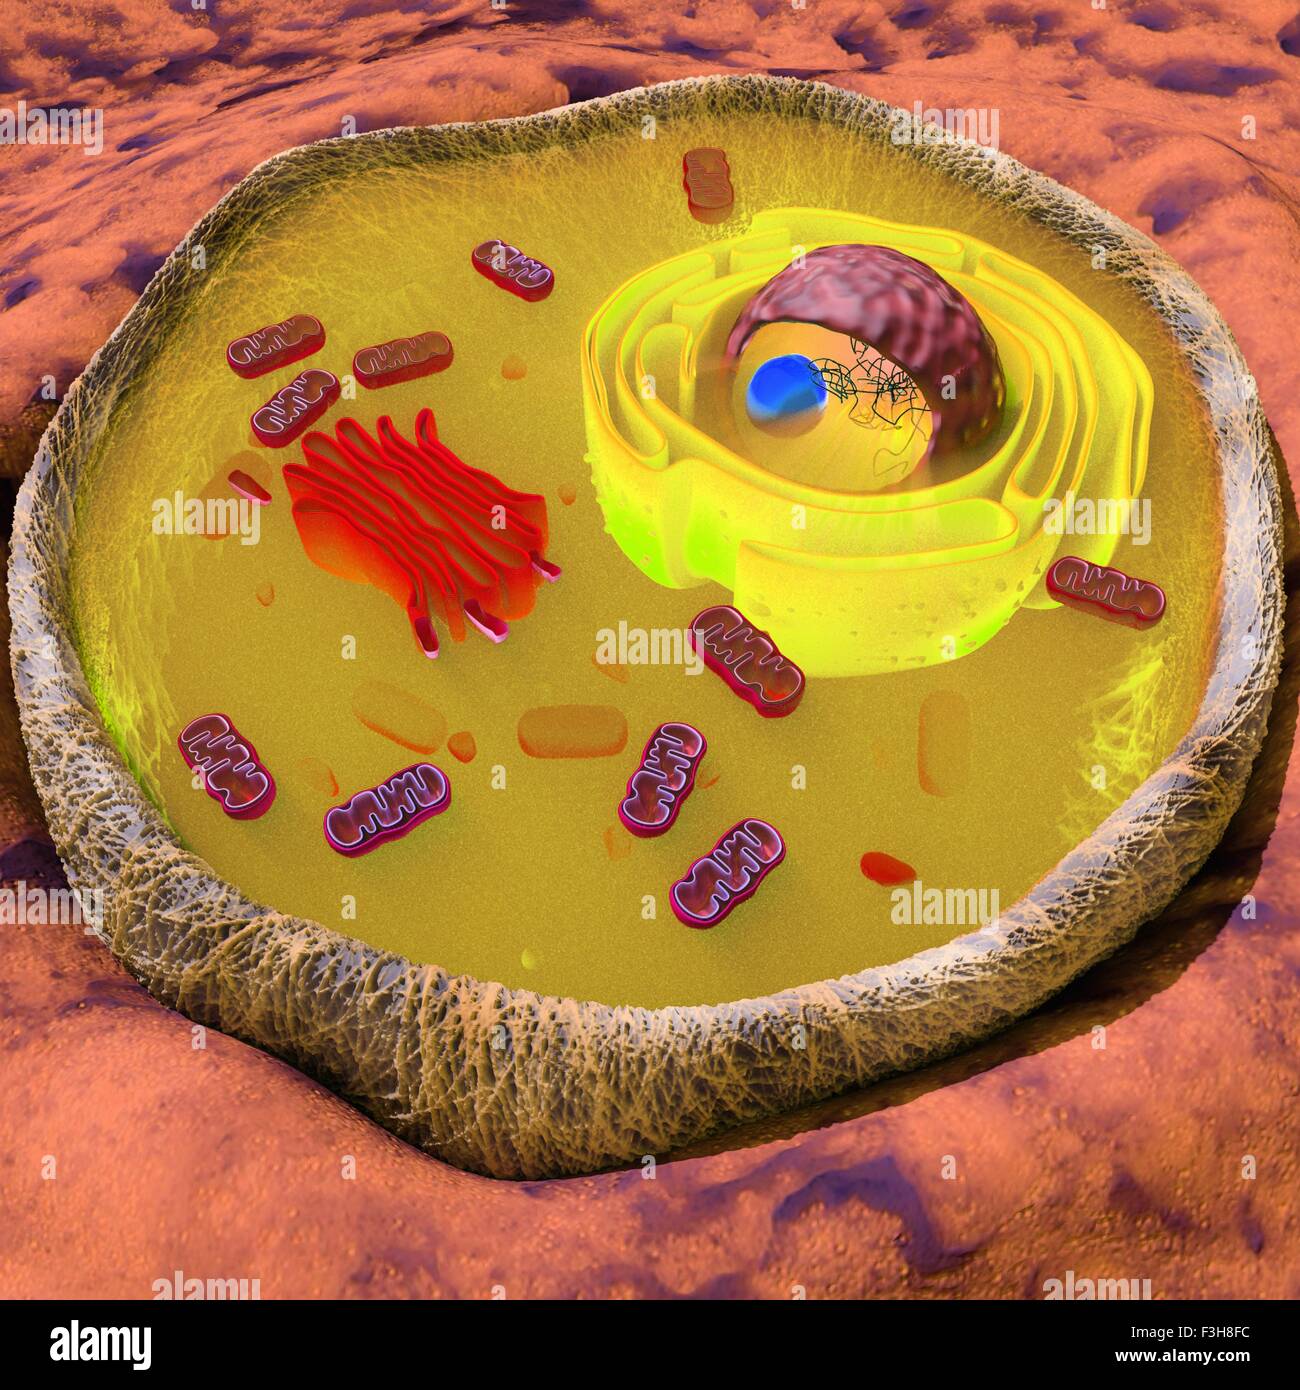 Ilustración de una célula eucariota mostrando las principales orgánulos, tales como el aparato de Golgi, el retículo endoplasmático, las mitocondrias, núcleo Foto de stock